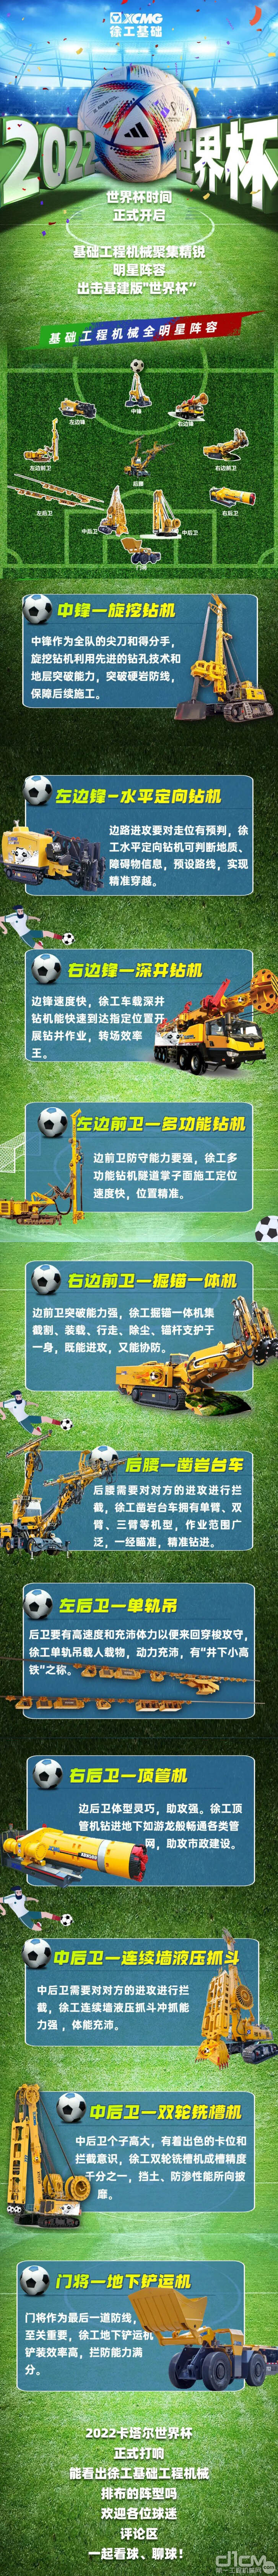 徐工基础工程机械版“世界杯”